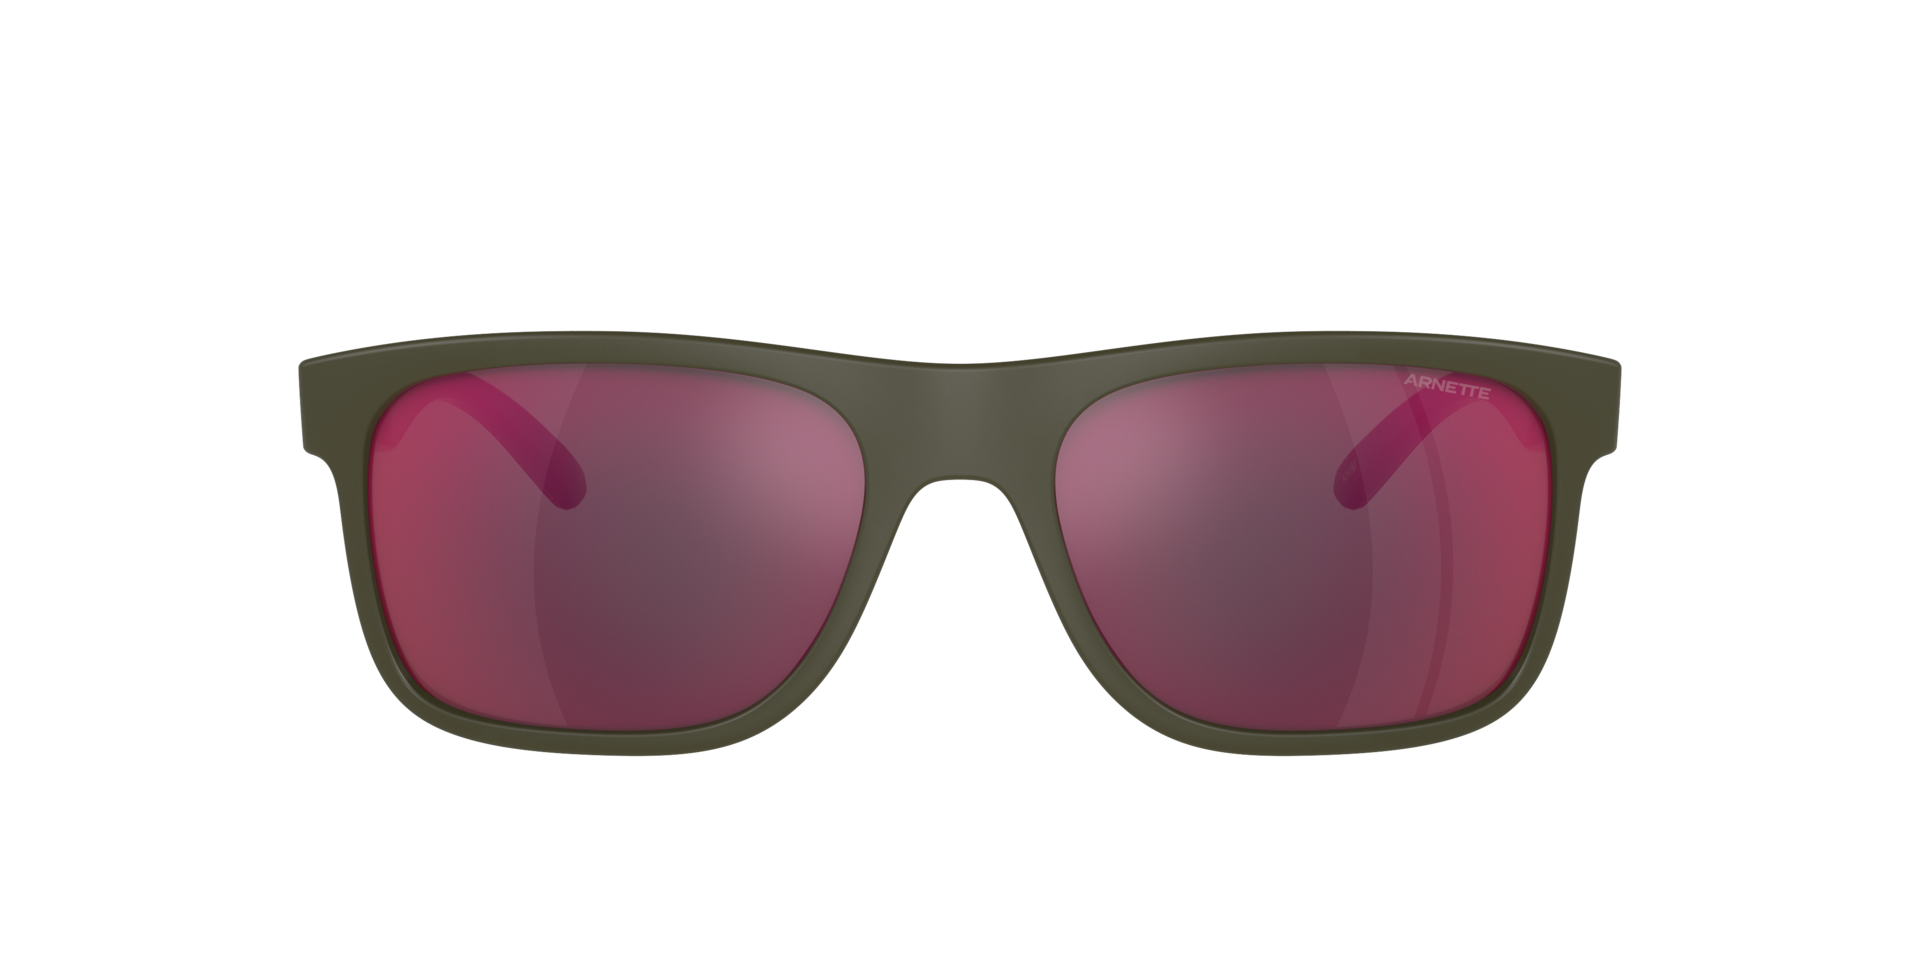 Das Bild zeigt die Sonnenbrille AN4341 28546Q von der Marke Arnette in braun.